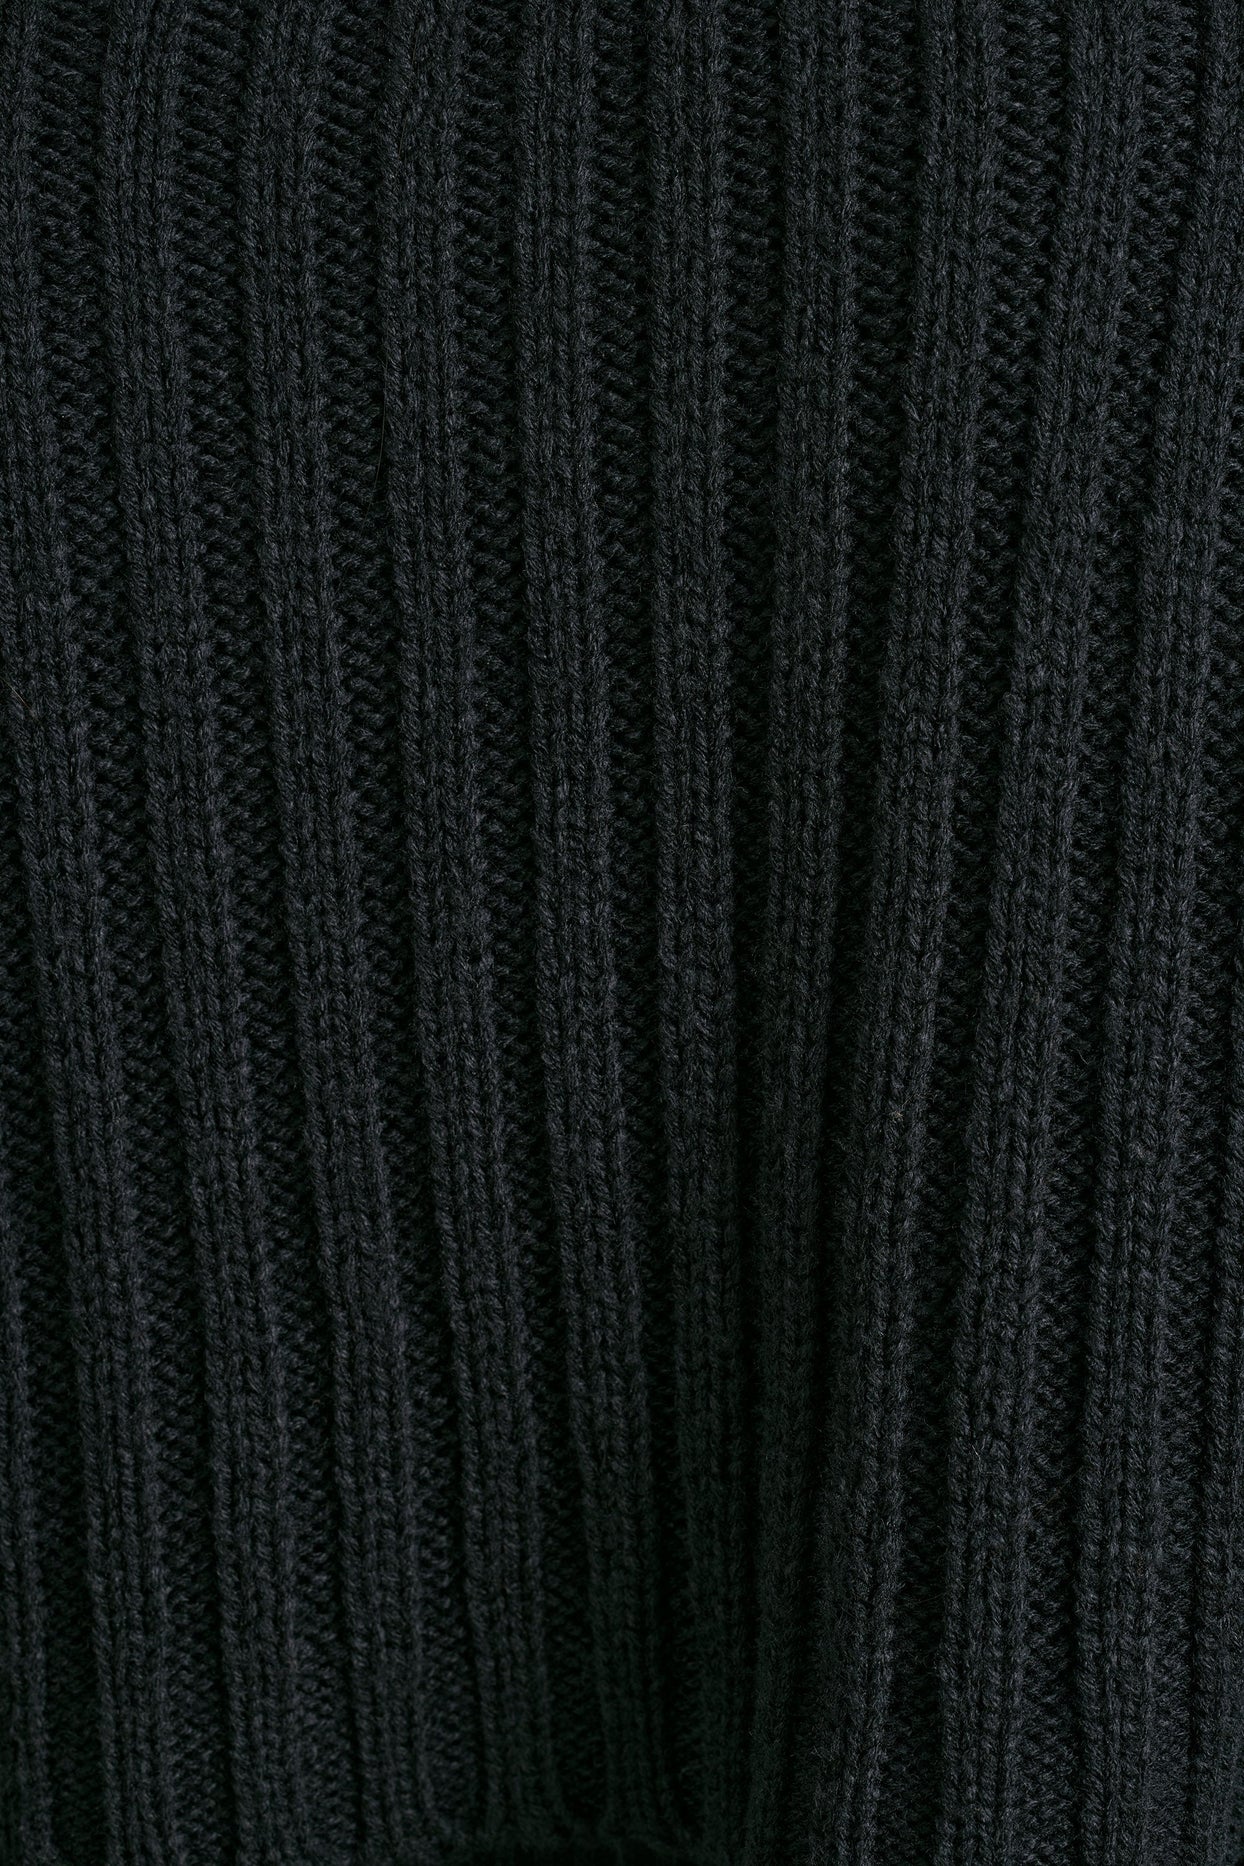 Chunky Knit Shrug in Black